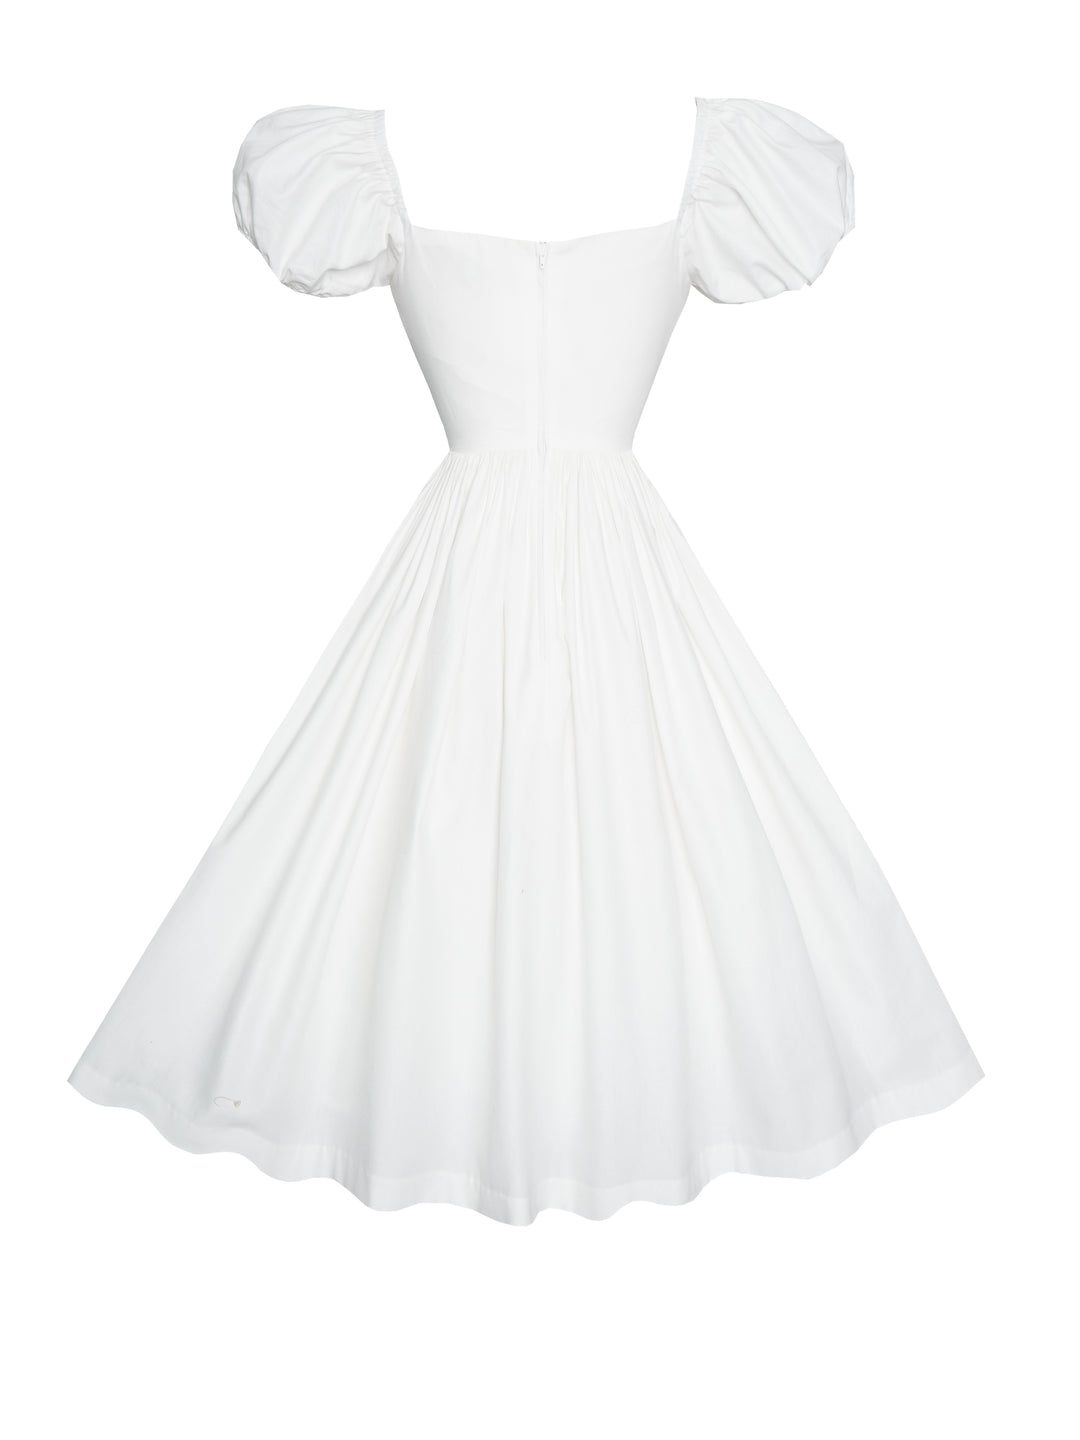 MTO - Valentina Dress in White Cotton